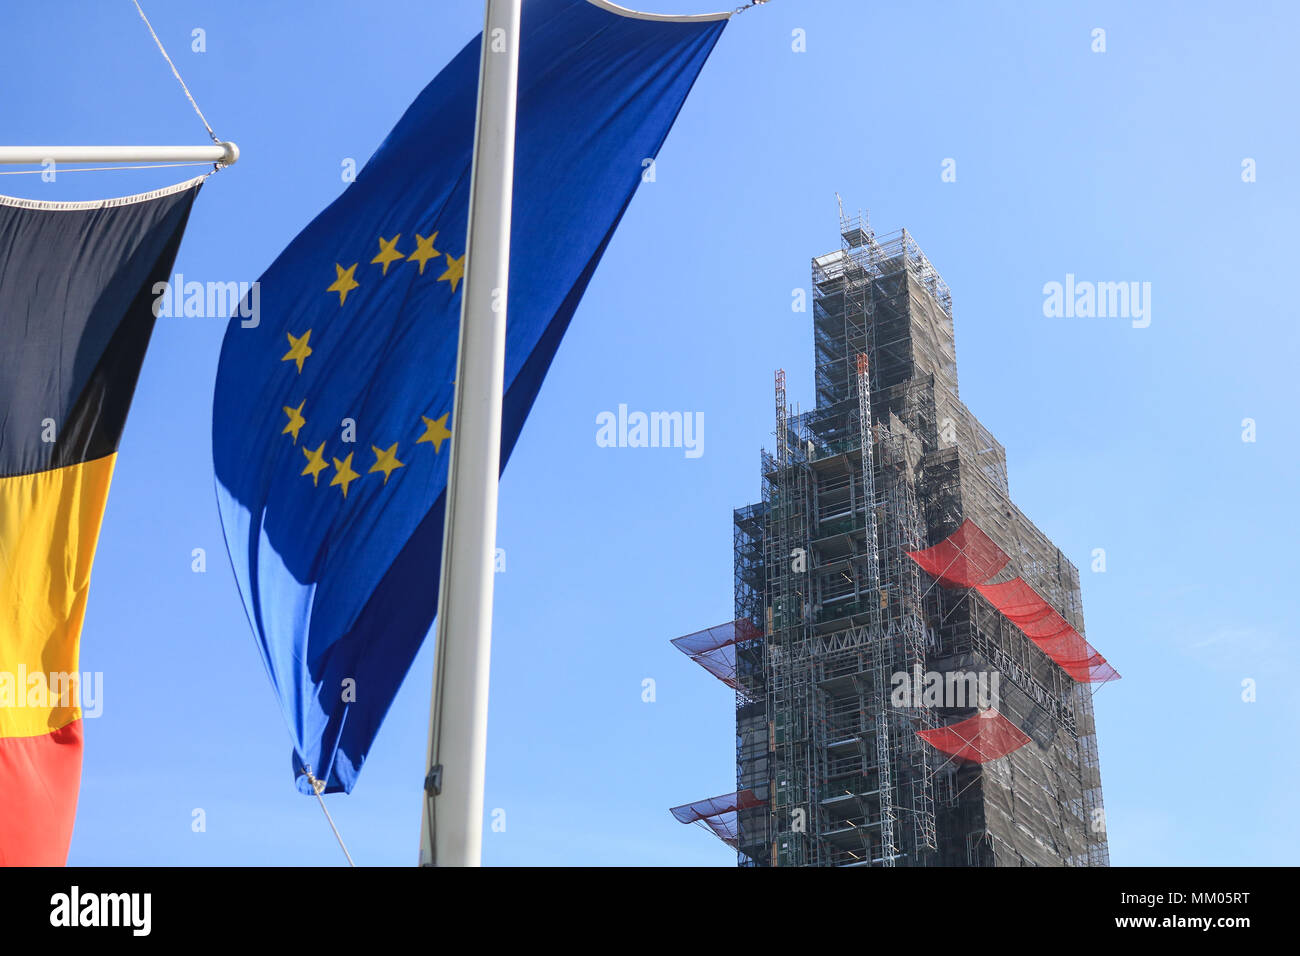 Londres, Reino Unido. 9 de mayo de 2018. Banderas de los Estados miembros de la Unión Europea cuelgan en la Plaza del Parlamento para celebrar el Día de Europa: amer ghazzal crédito/Alamy Live News Foto de stock